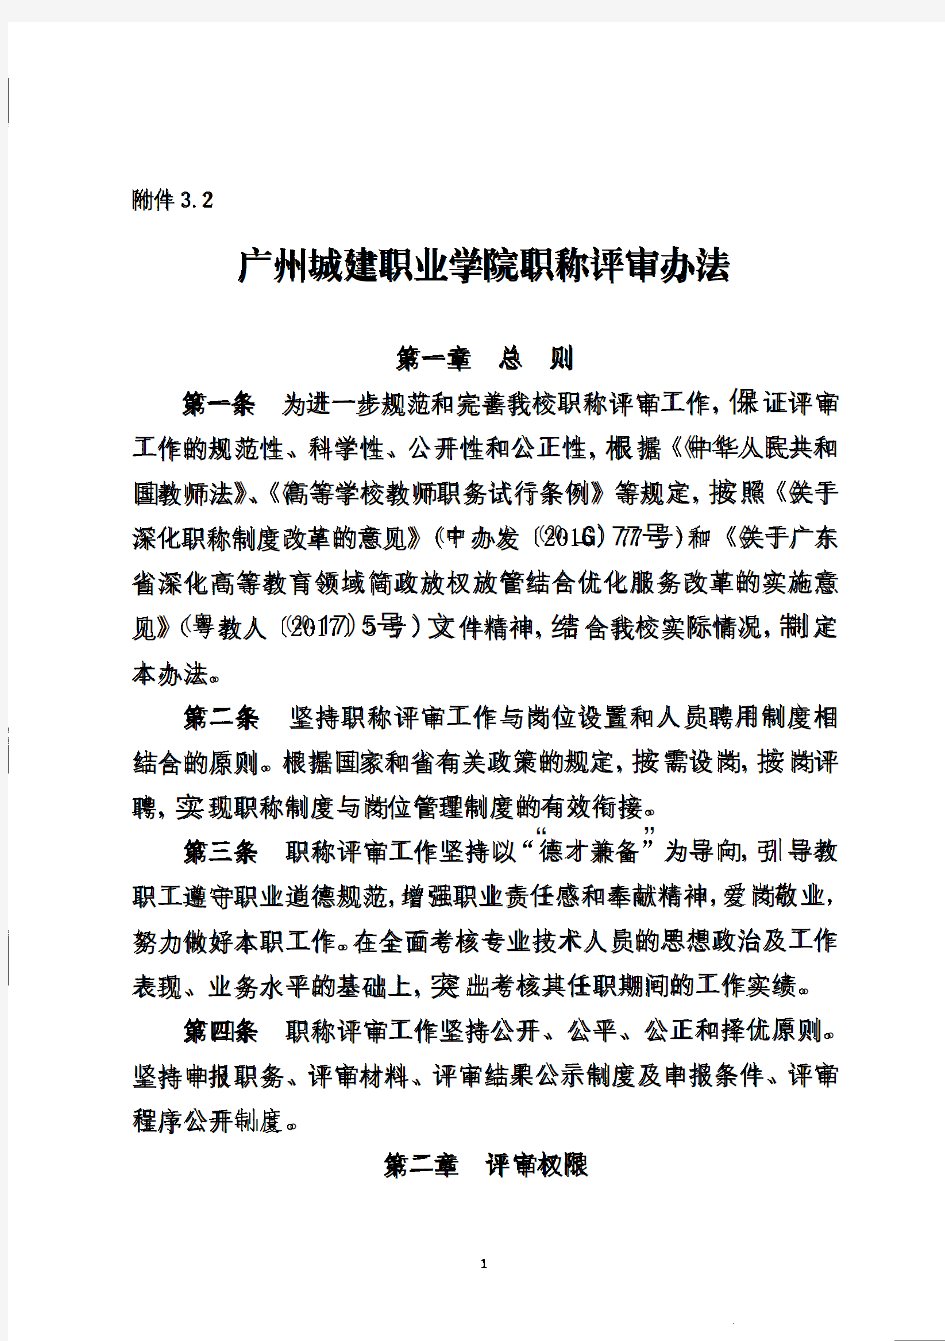 广州城建职业学院职称评审办法